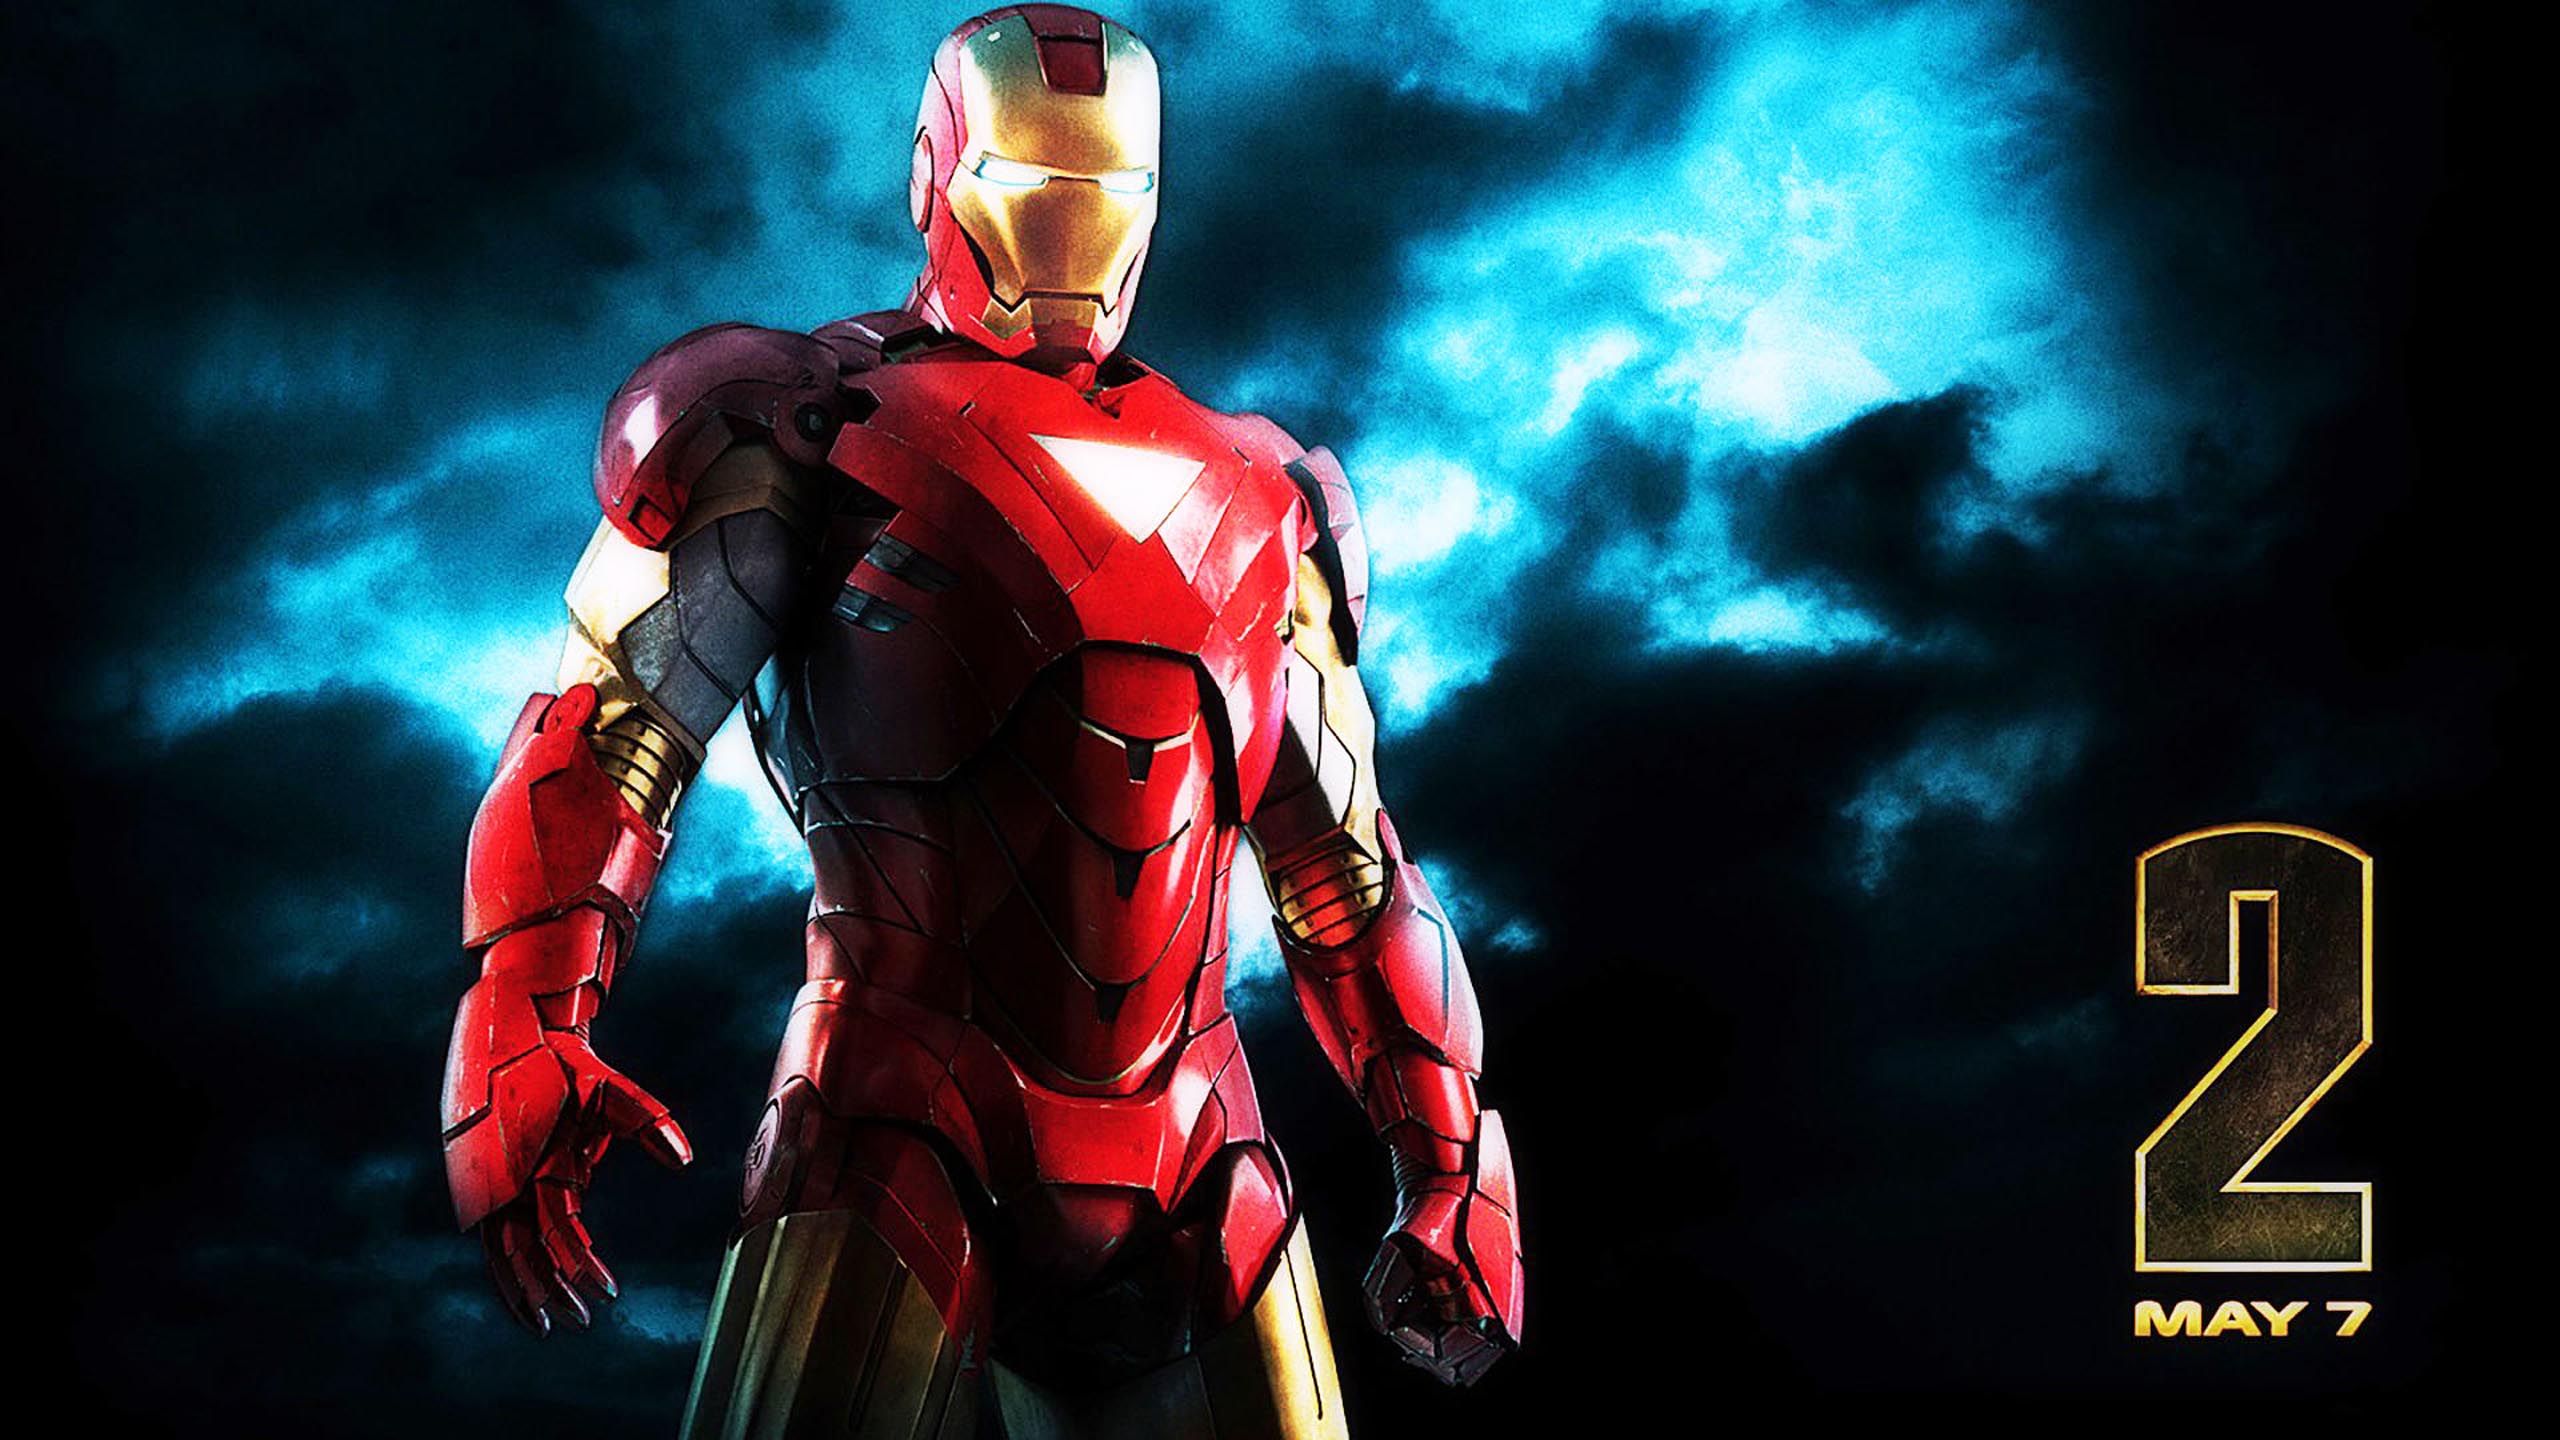 Iron Man Arc Reactor /iron Man Arc